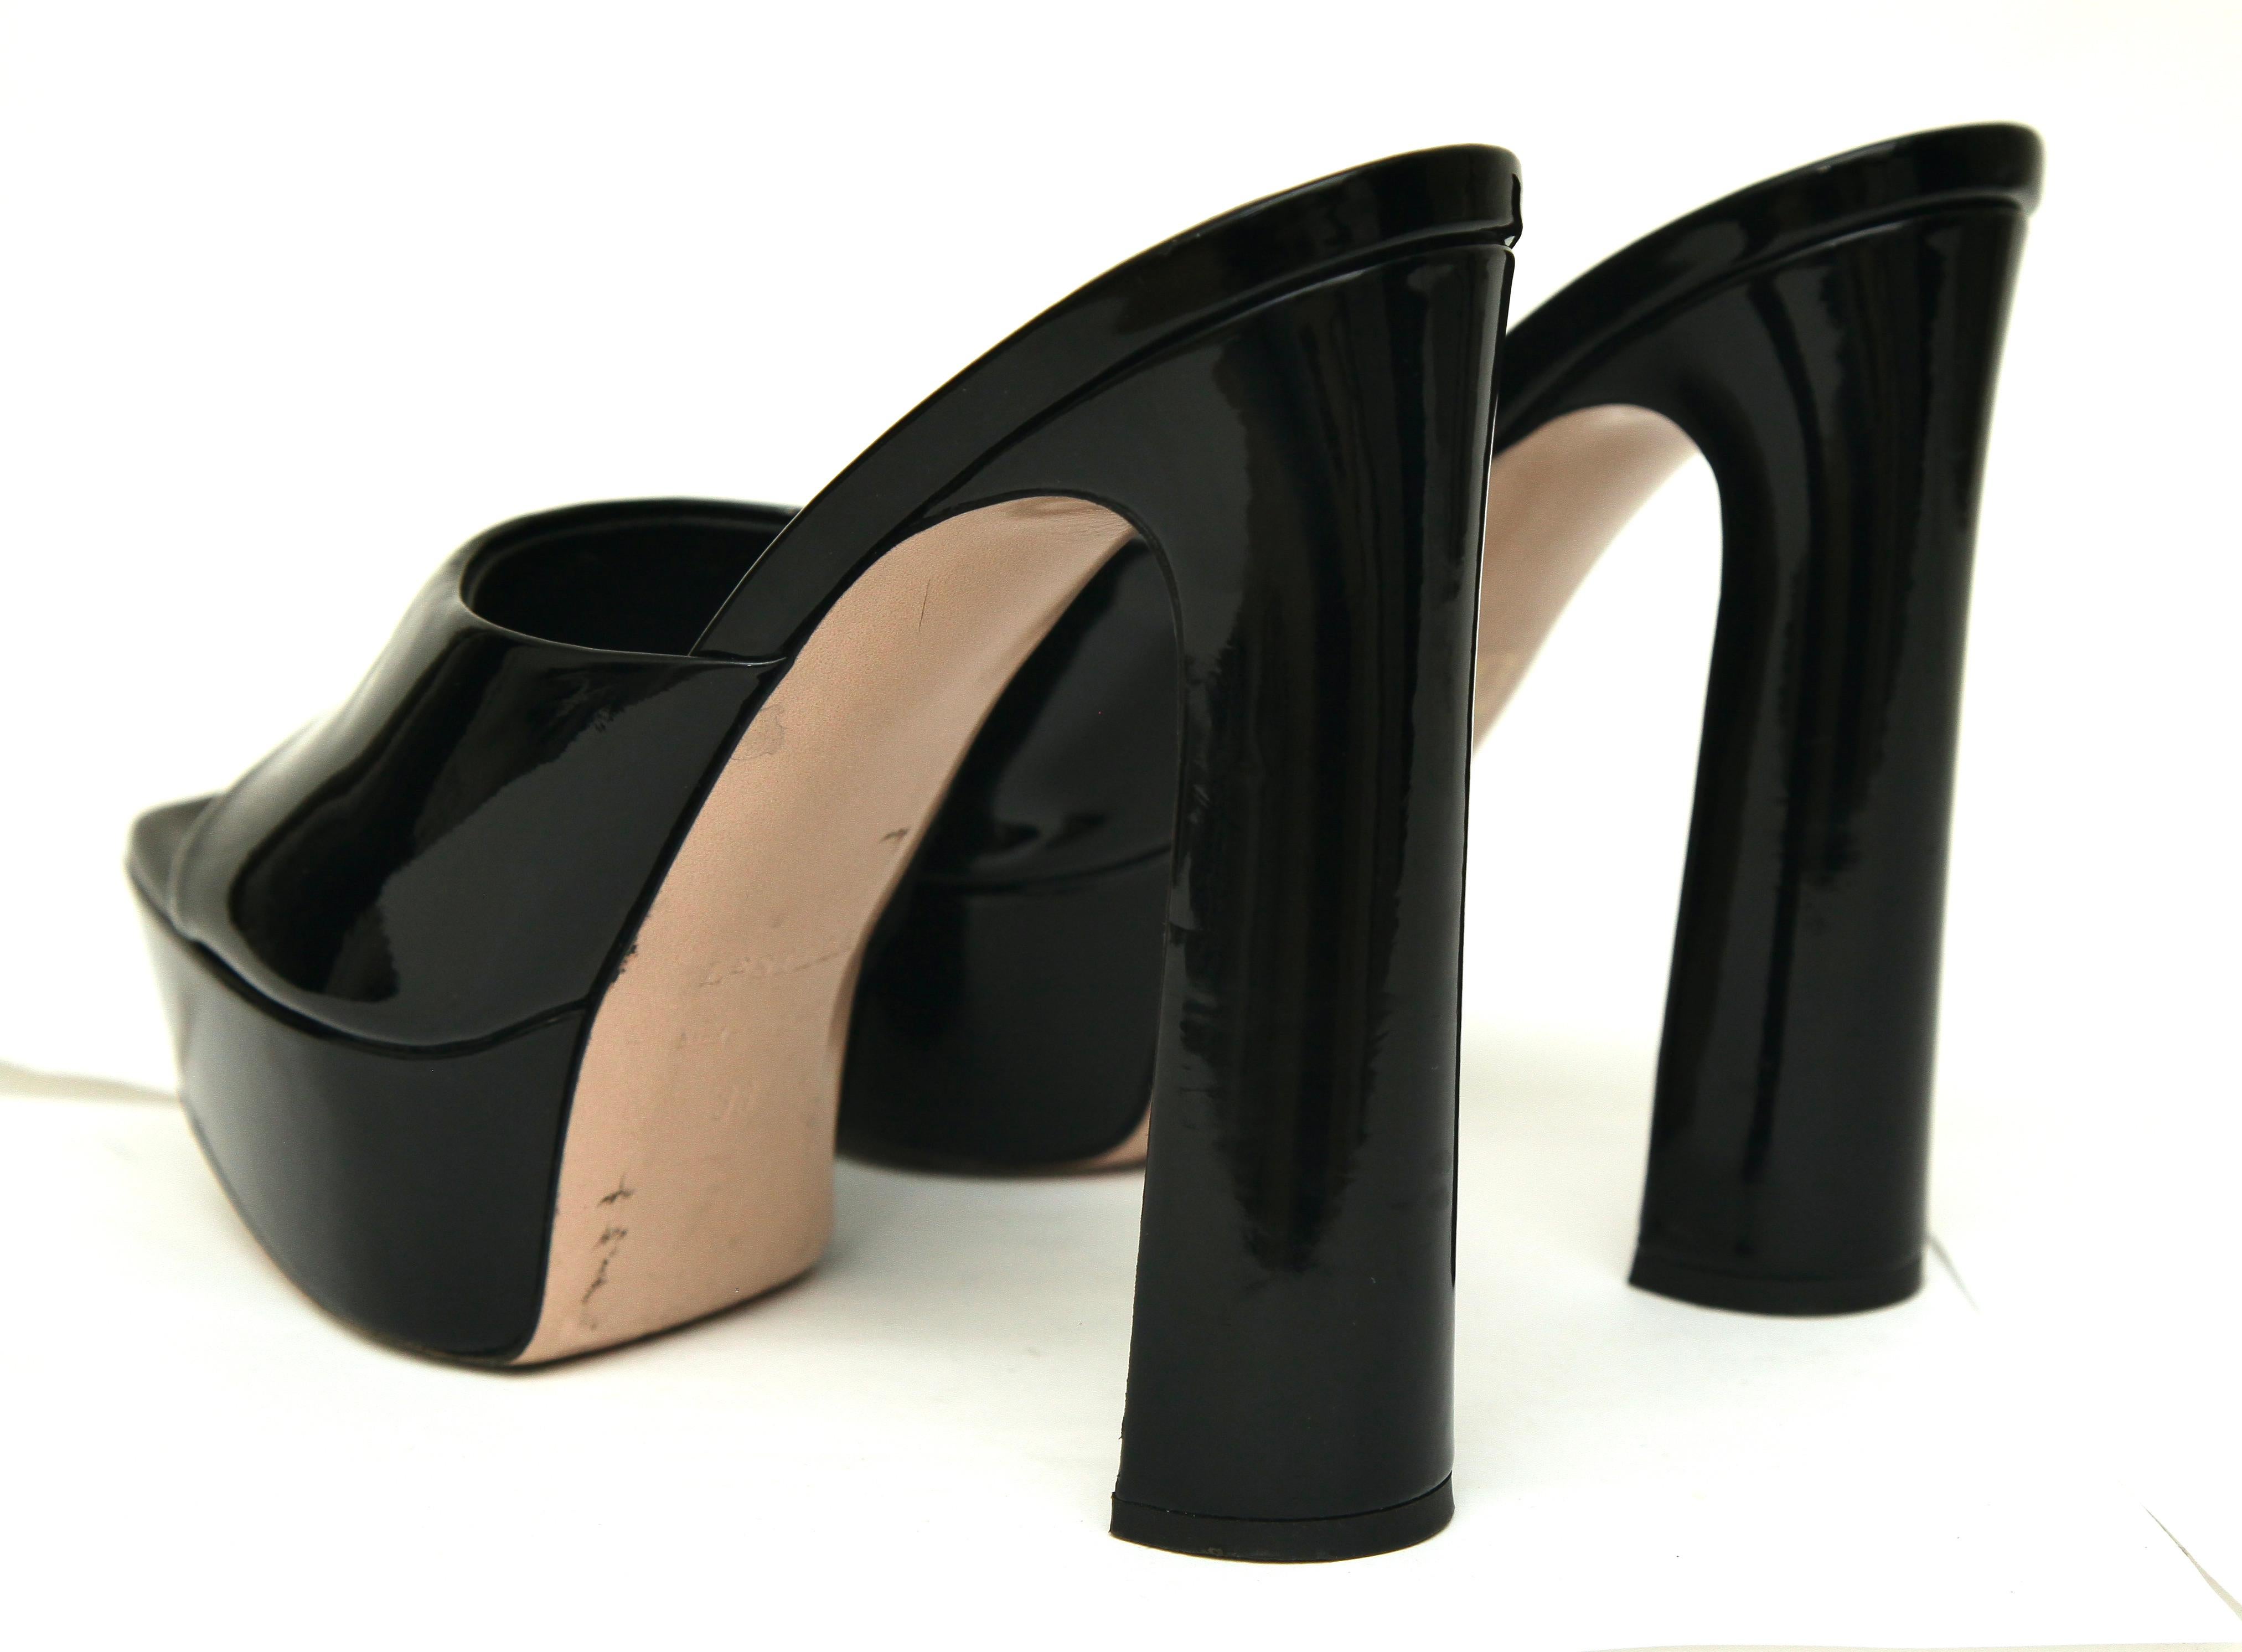 LE SILLA Black Patent Leather RESORT Mule Sandal Platform Heel Slip On 38 $790 For Sale 3